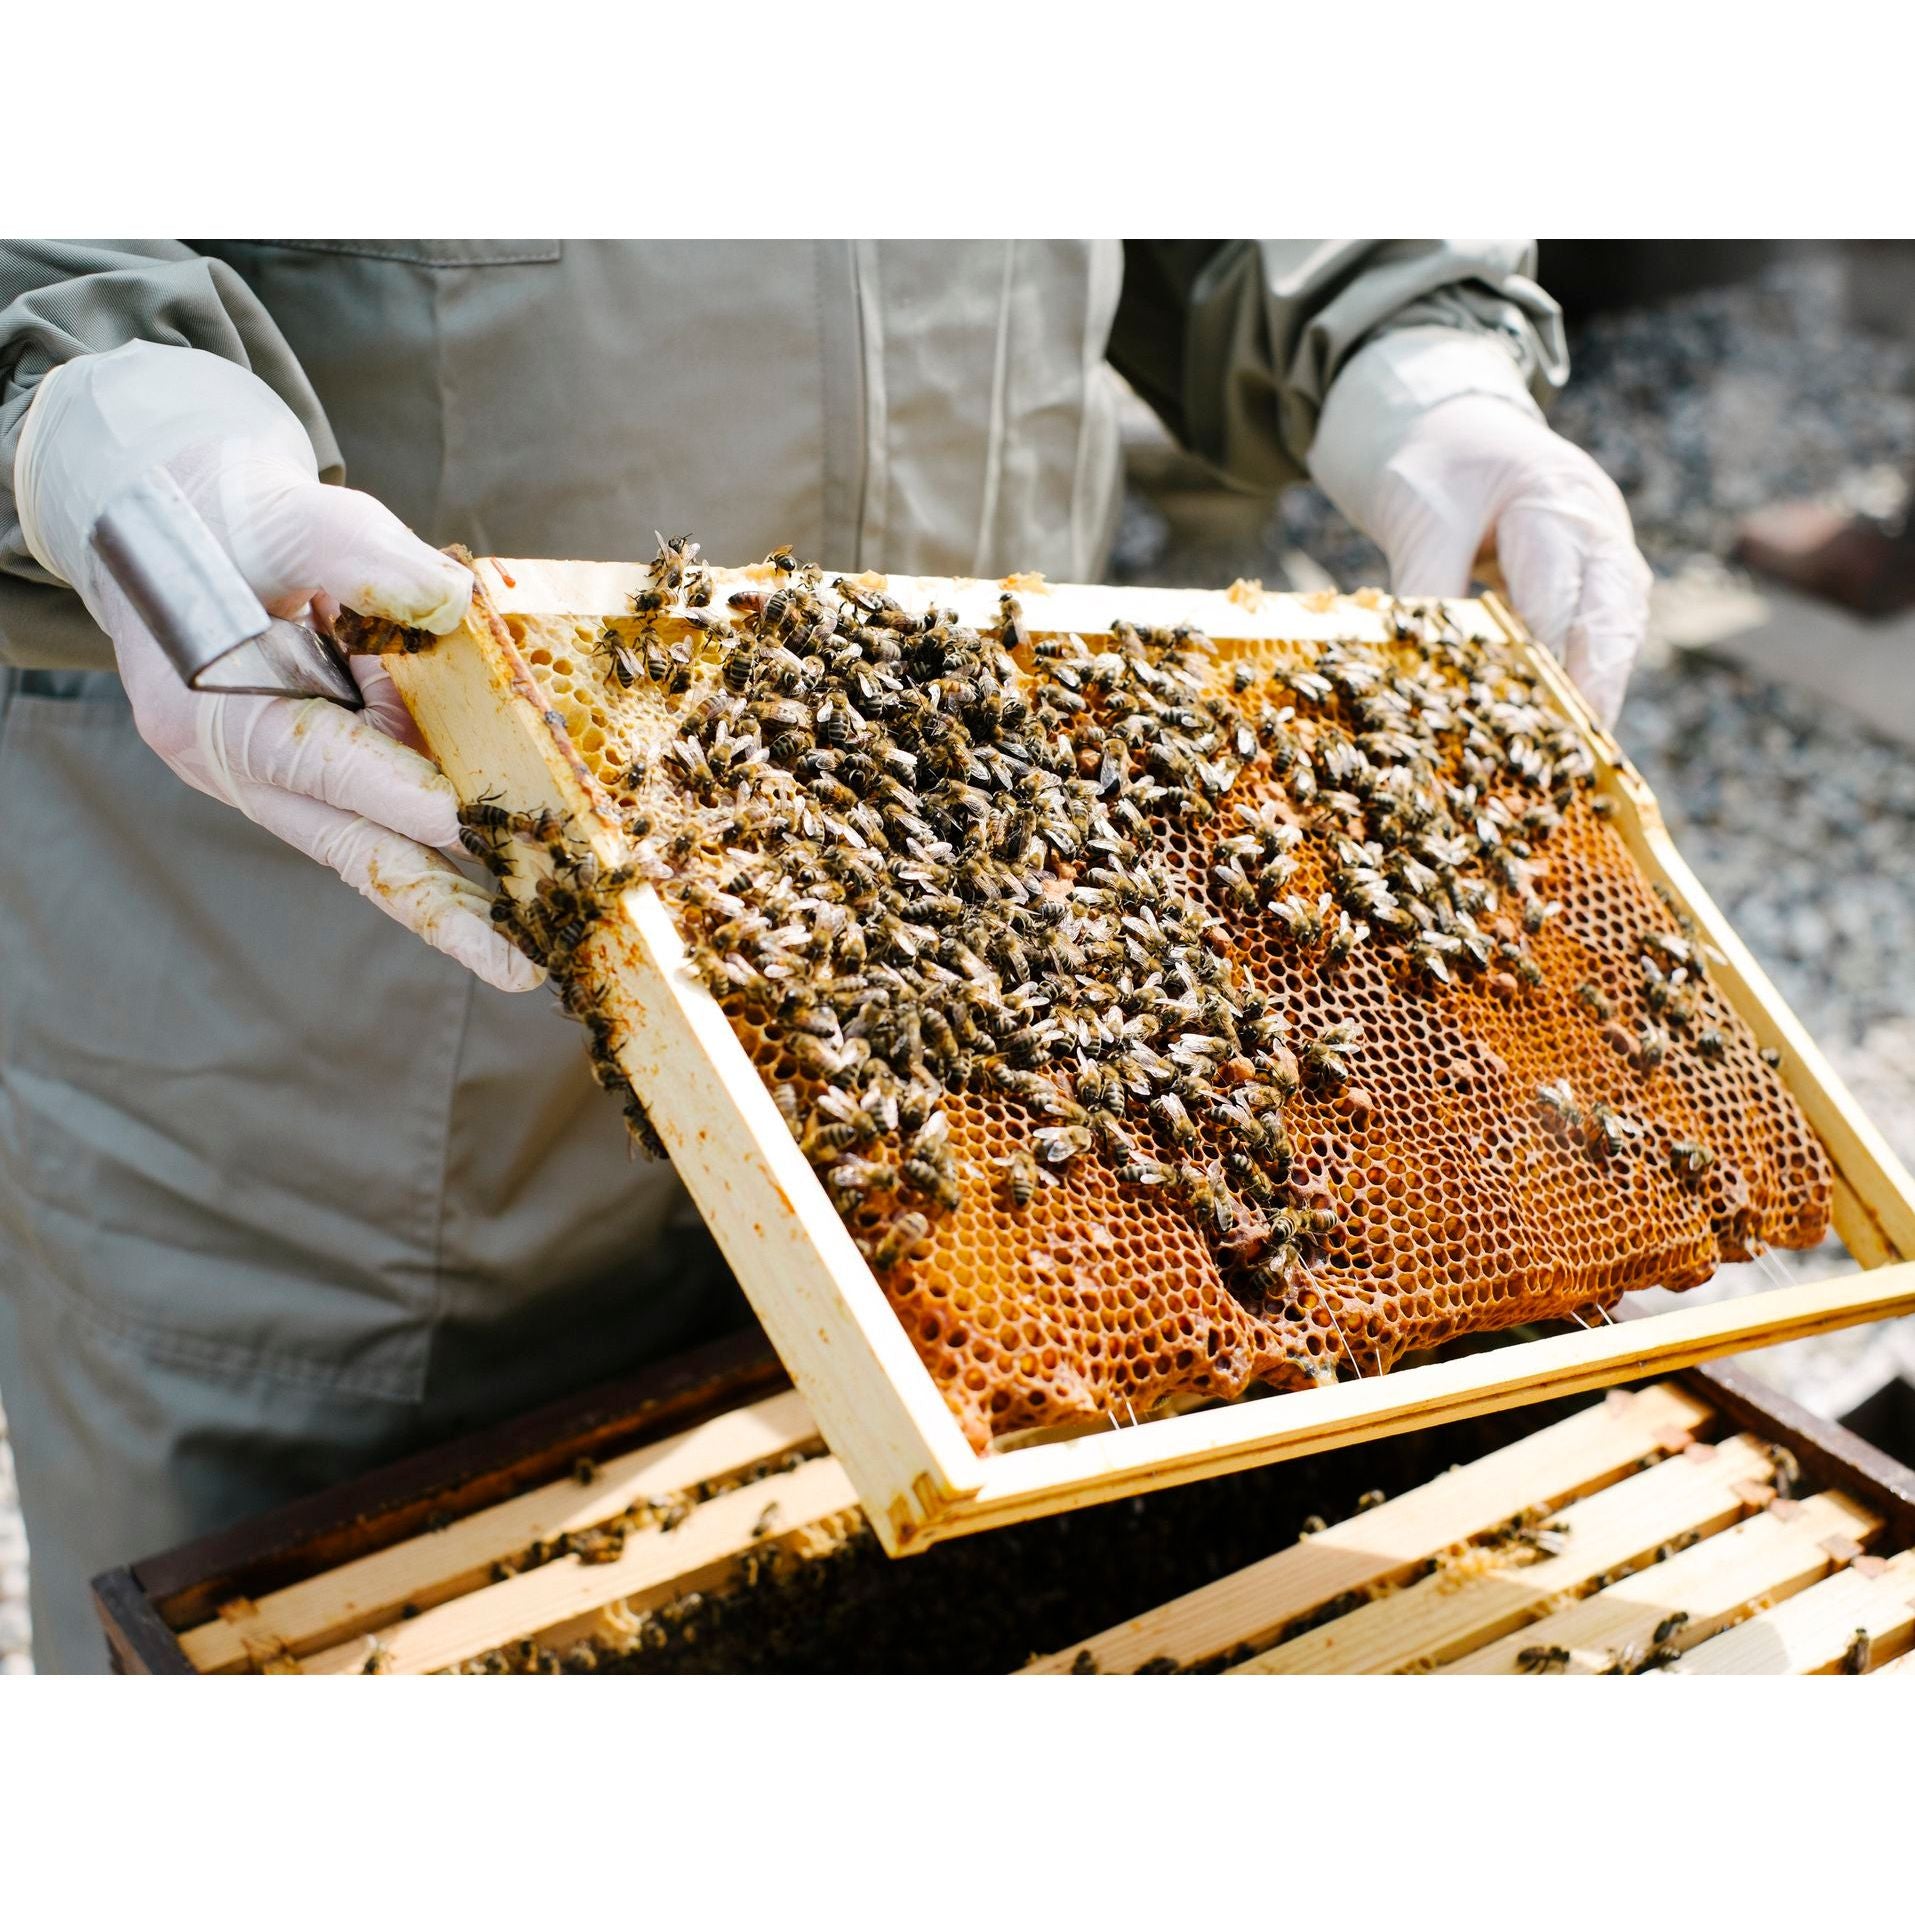 Bee Pollen - Dietary Supplement